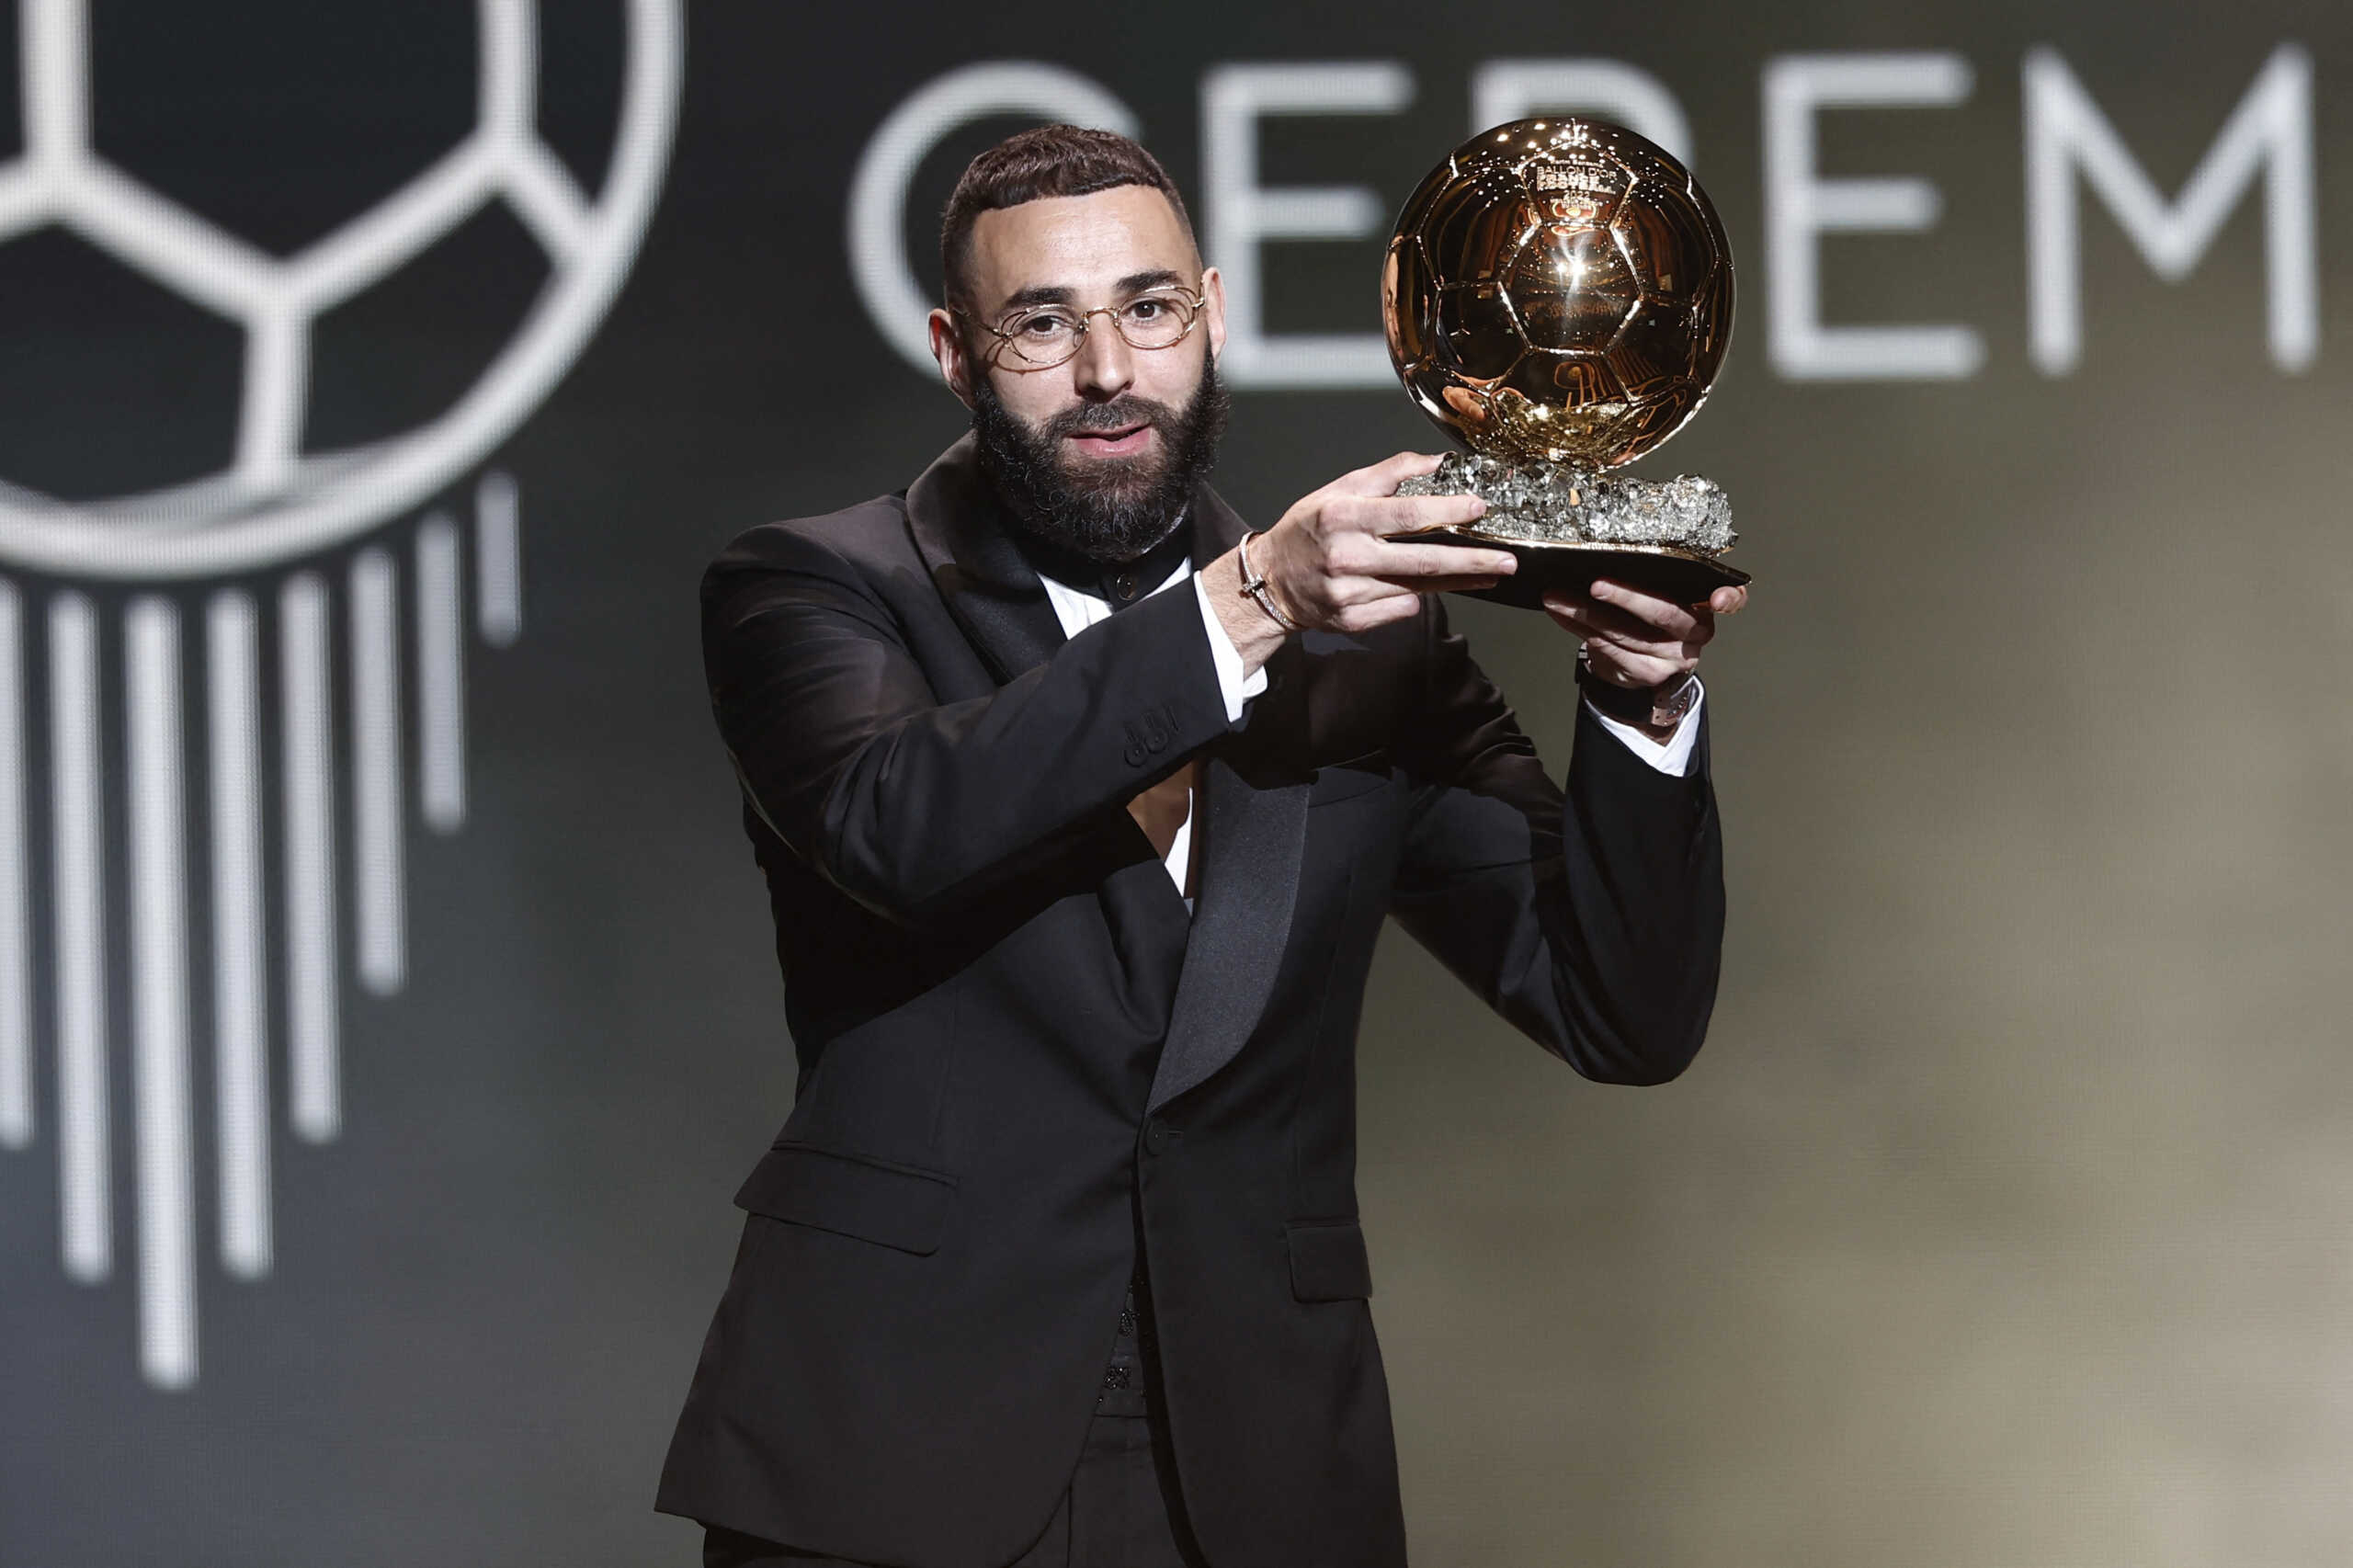 Χρυσή μπάλα: Ο Καρίμ Μπενζεμά πήρε τον τίτλο του κορυφαίου ποδοσφαιριστή στον κόσμο για τη σεζόν 2021-22